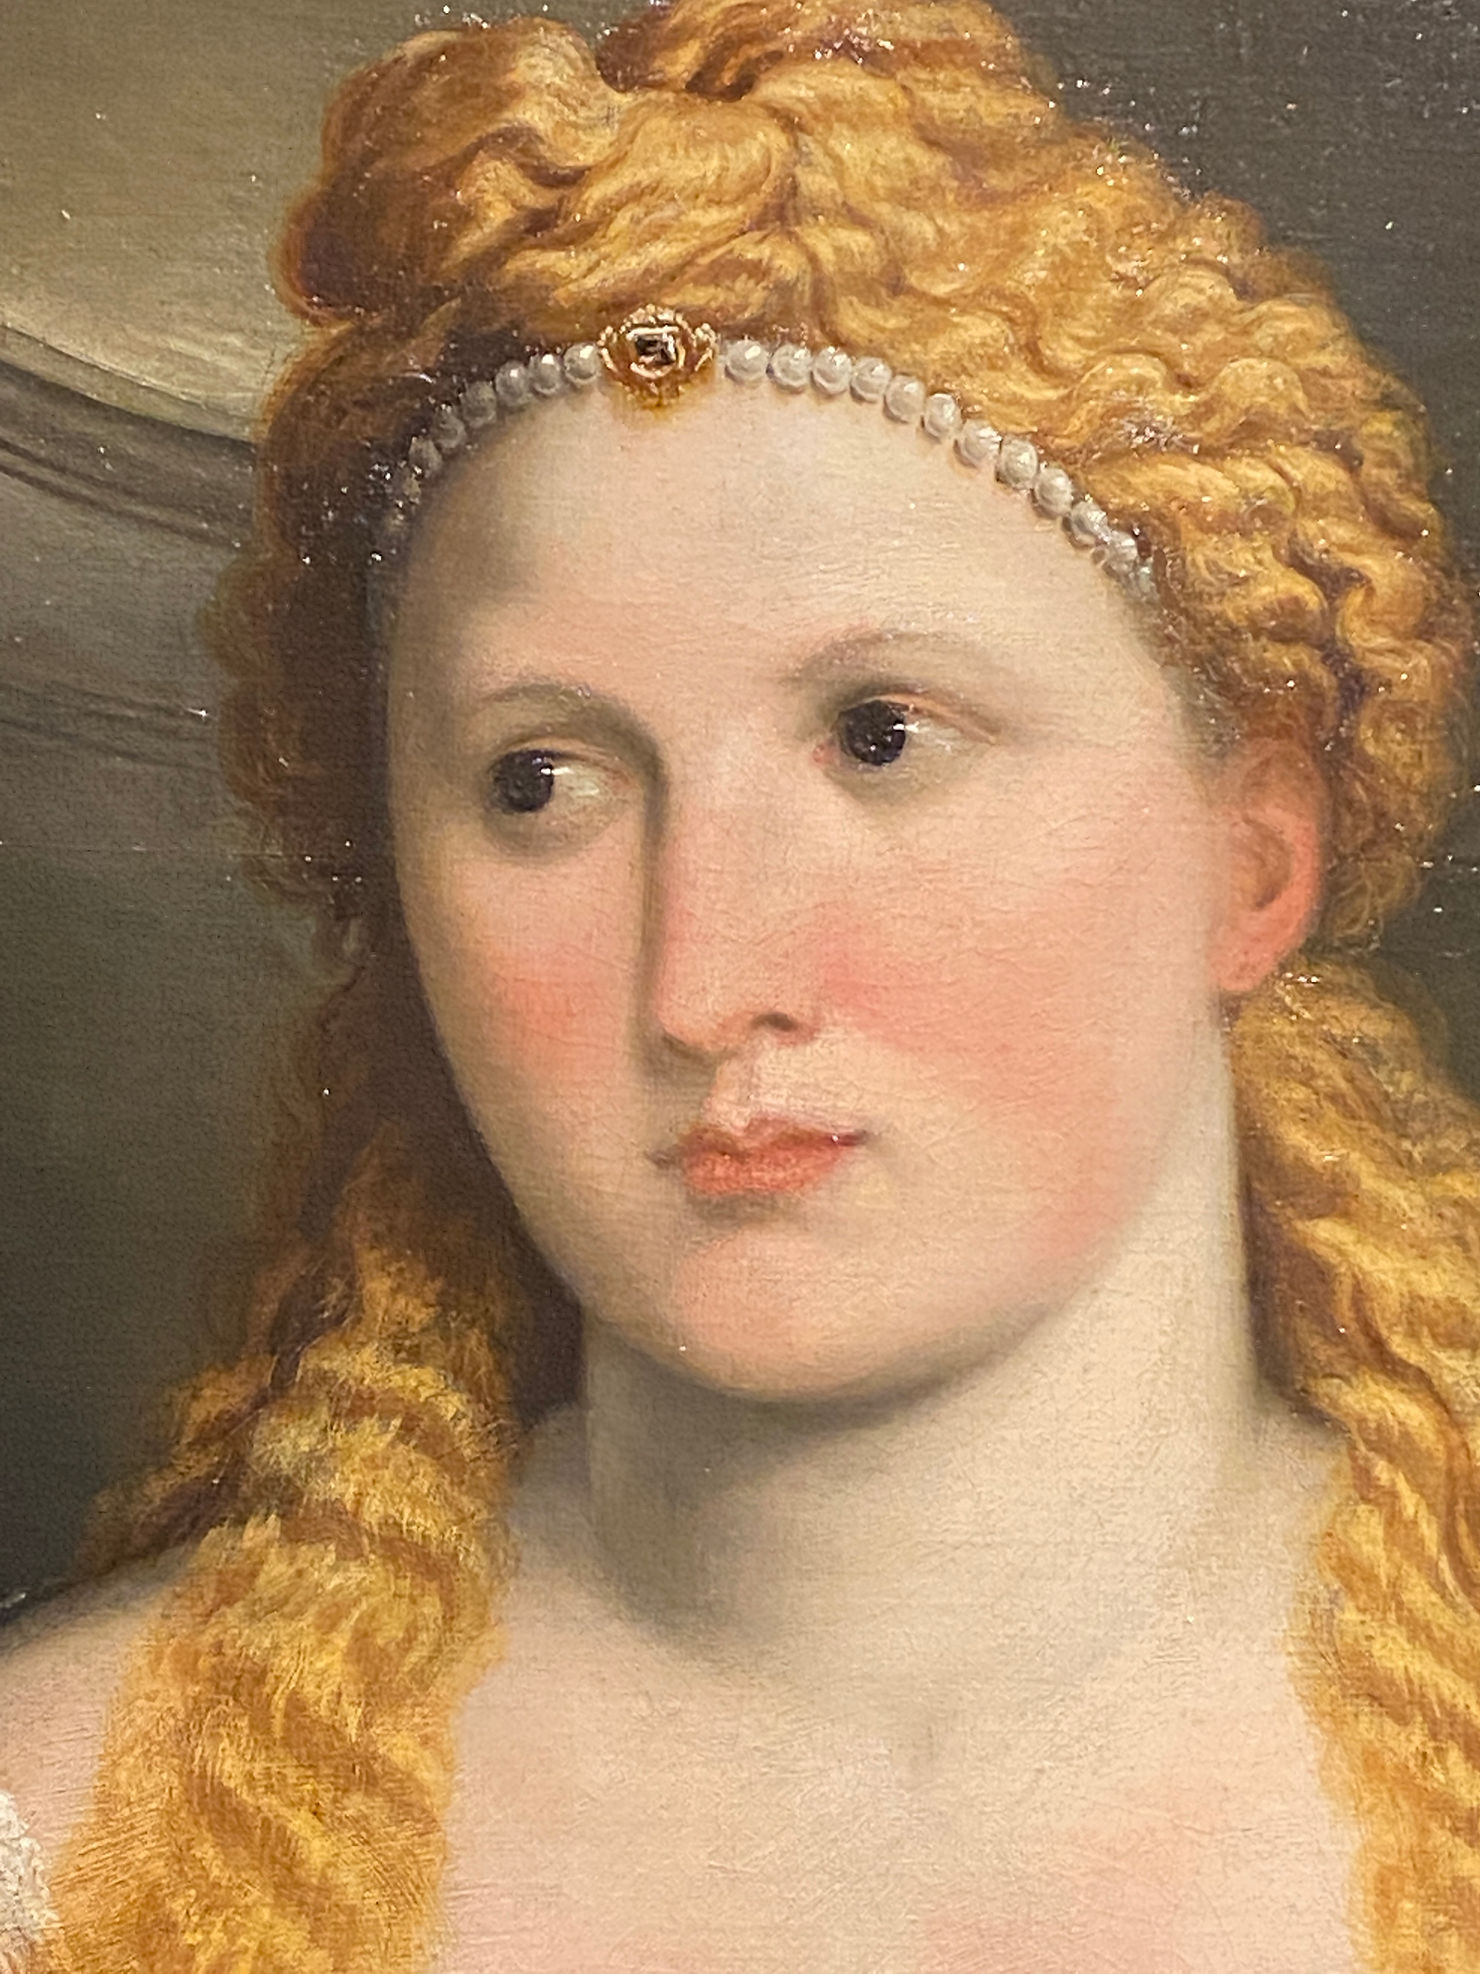 Paris Bordon (Treviso, 1500 – Venezia, 1571) “Ritratto di giovane donna” 1545 – 1550 circa, olio su tela, cm 102x81, Kunthistorisches Museum di Vienna.